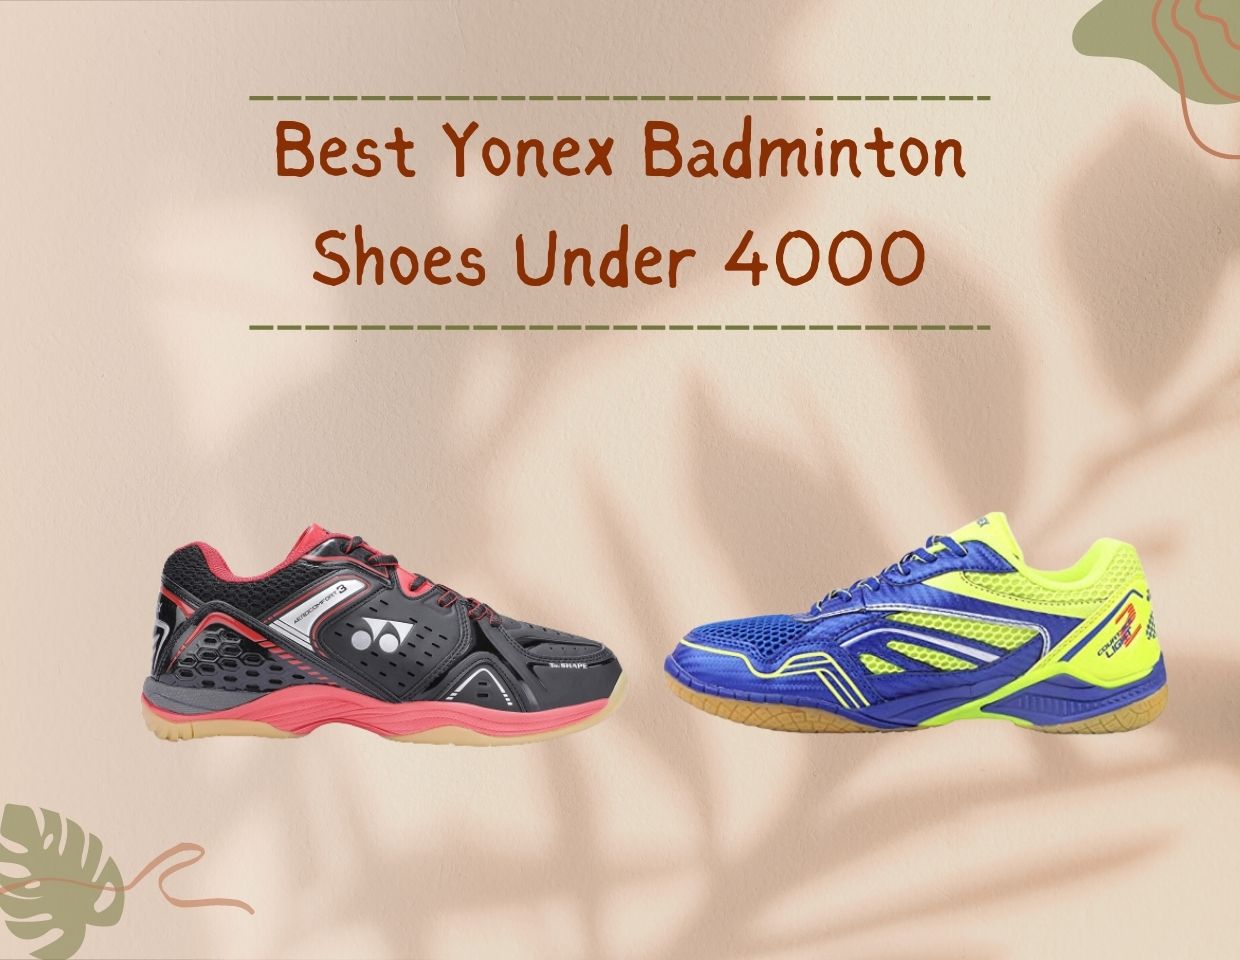 Best Yonex Badminton Shoes Under 4000 Reviews